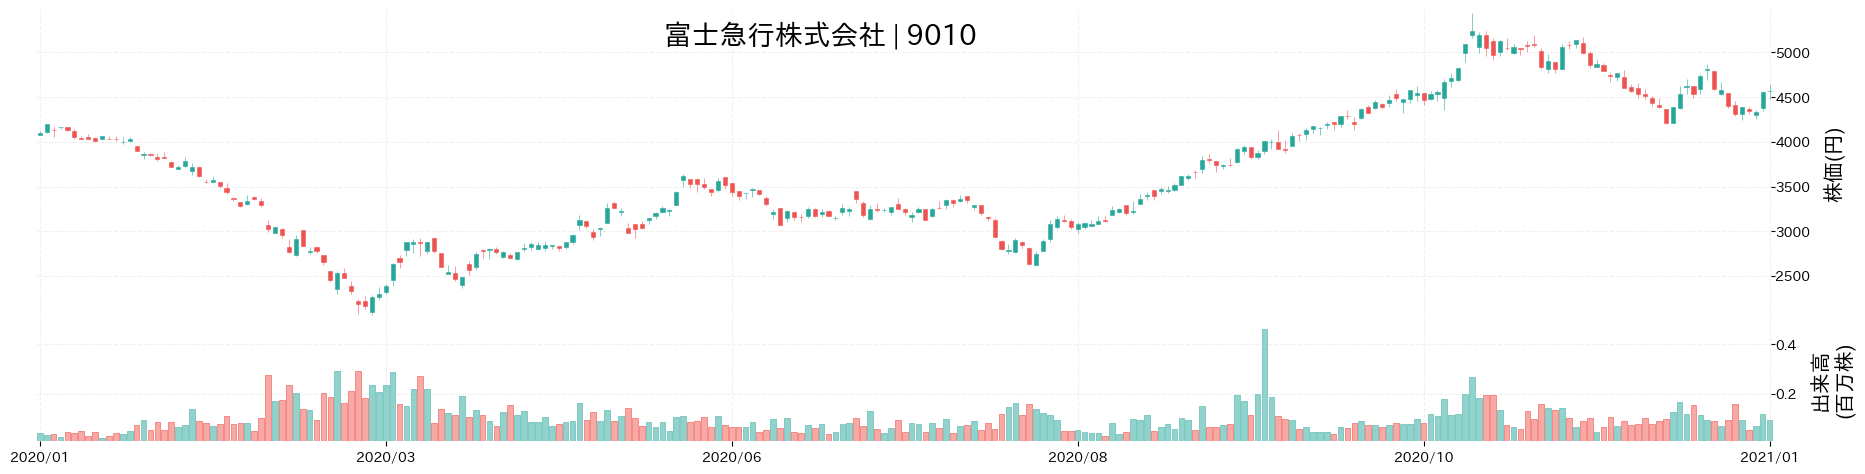 富士急行の株価推移(2020)